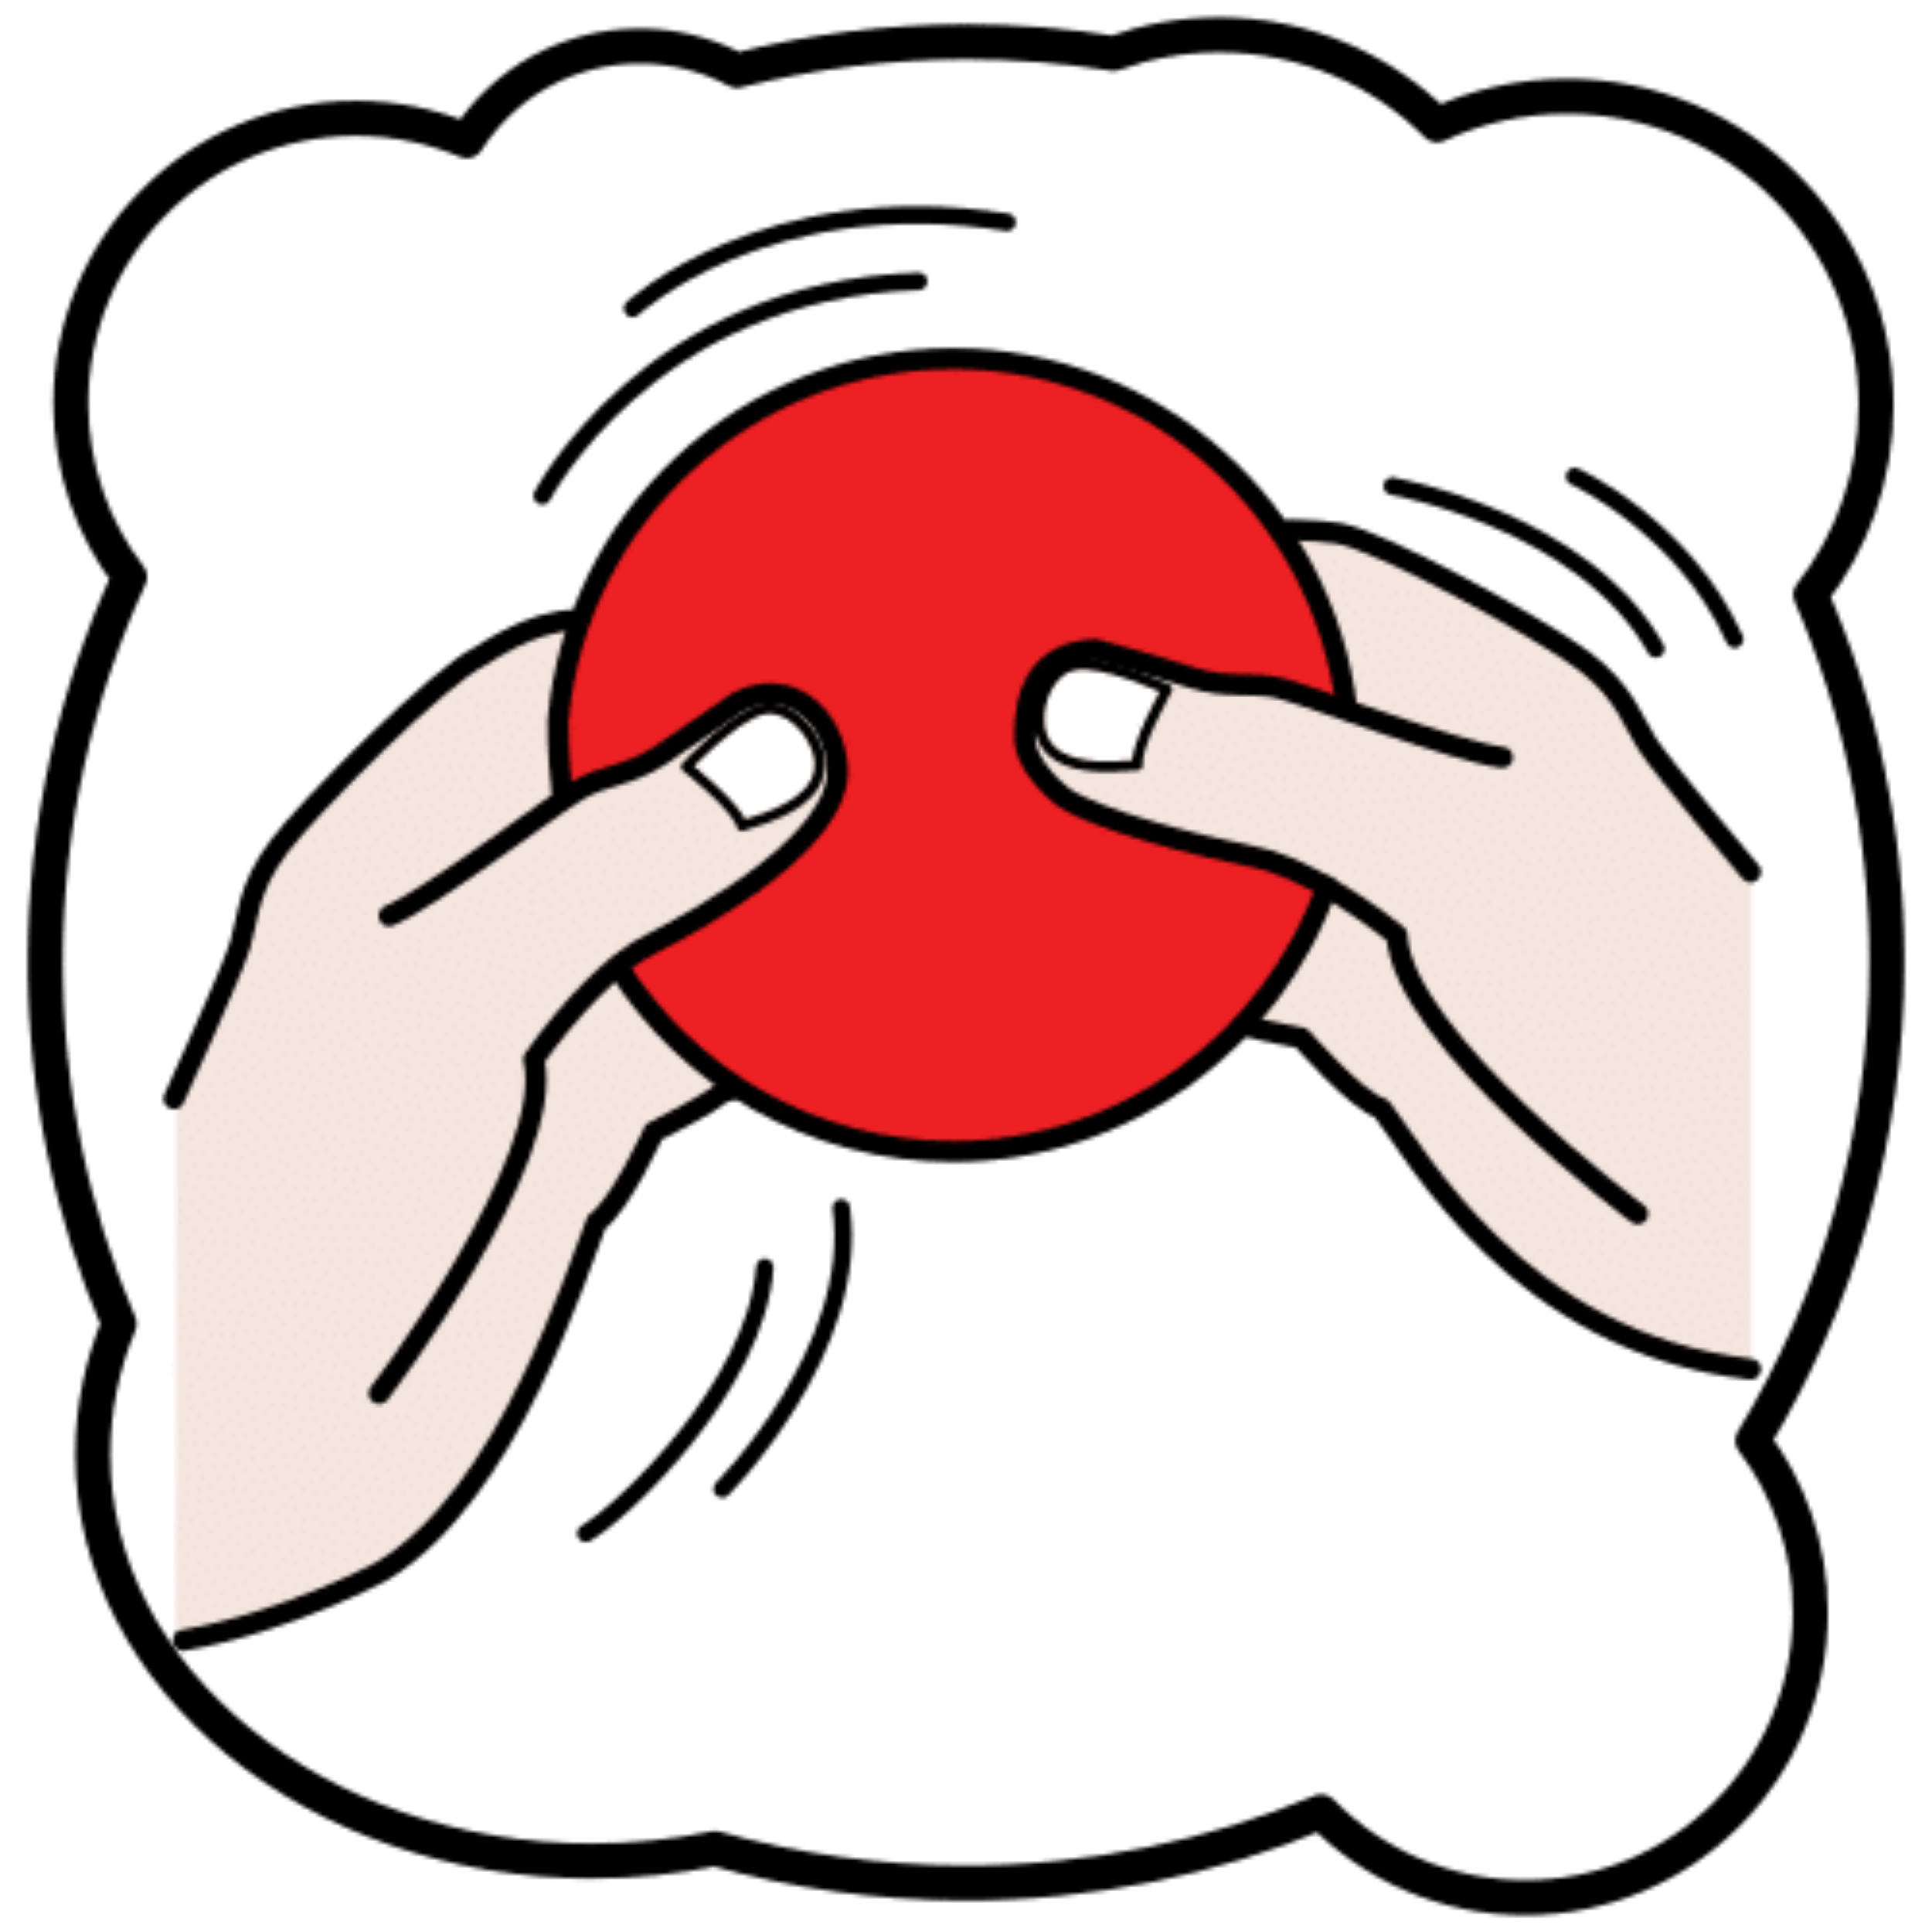 Imagen con dos manos tocando un círculo rojo.